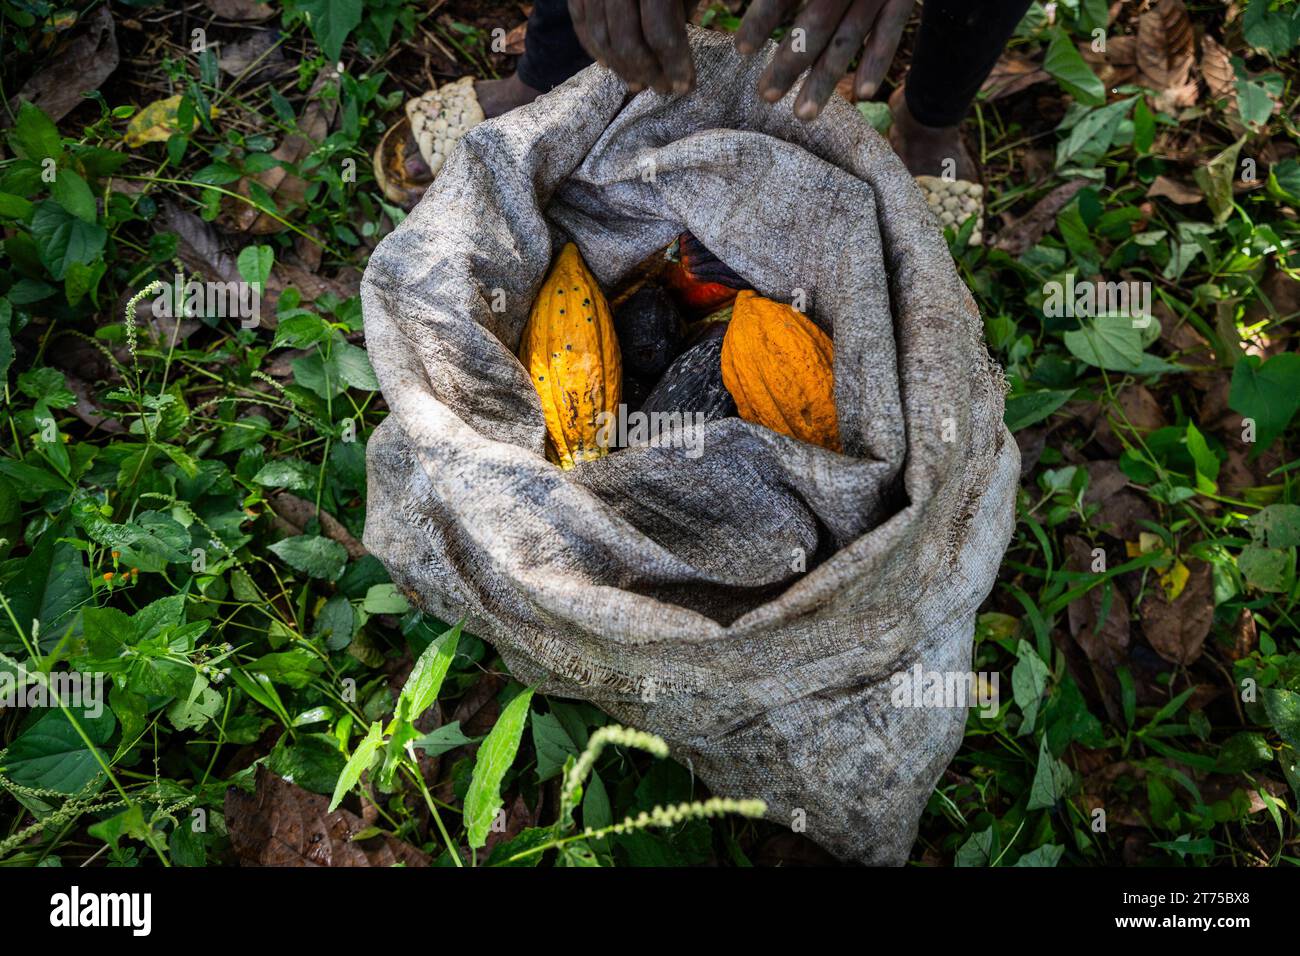 Un sacco con baccelli di cacao appena raccolti da un agricoltore nella sua coltivazione Foto Stock